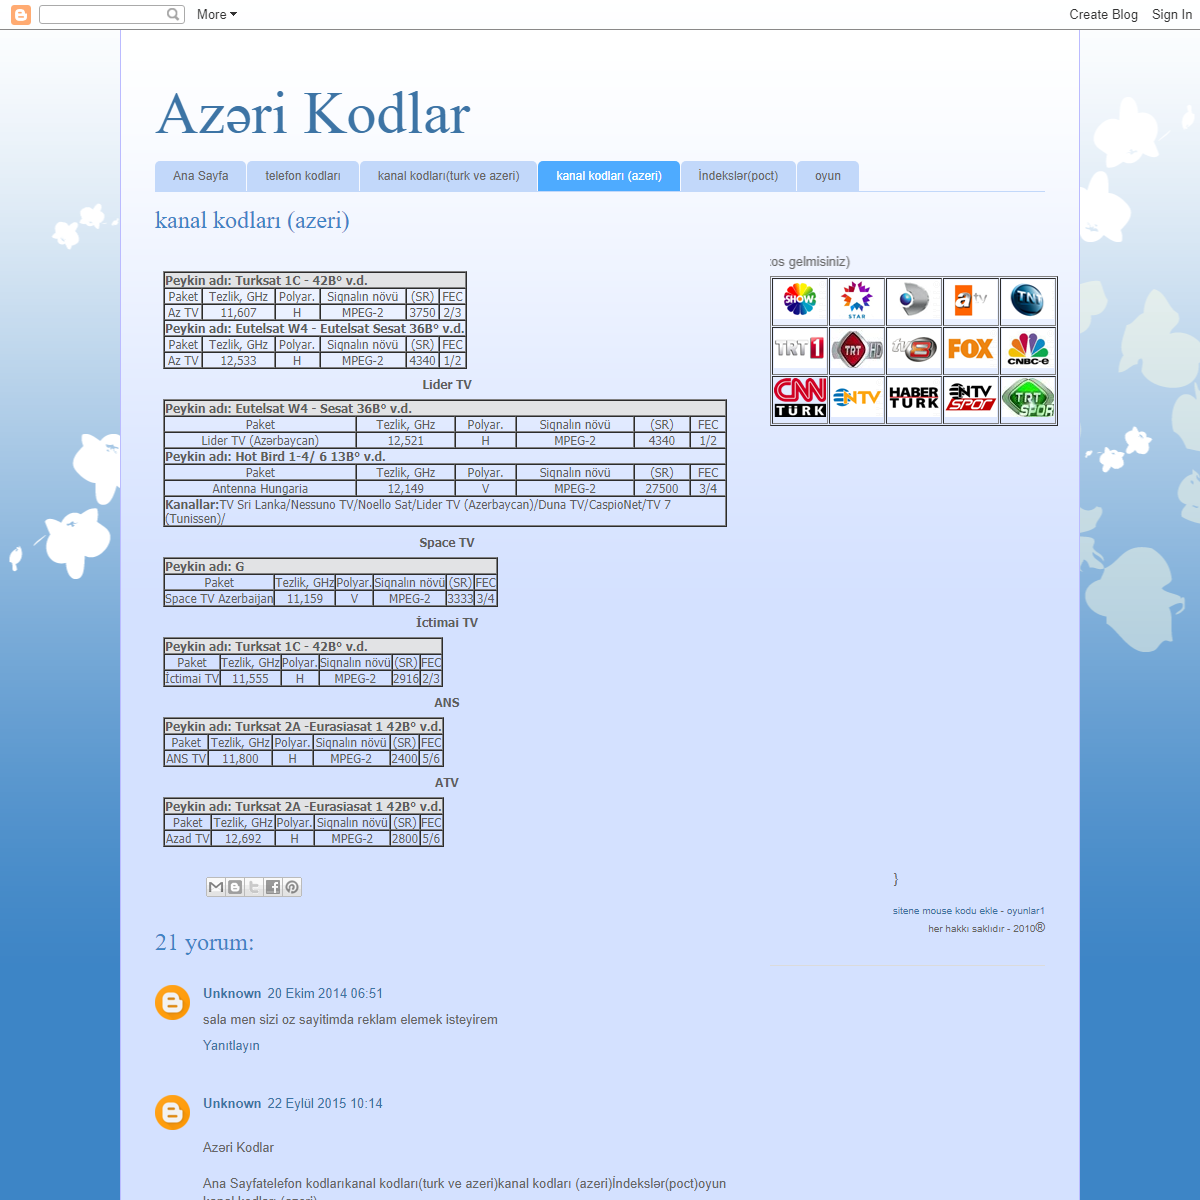 A complete backup of https://azerikodlar.blogspot.com/p/kanal-kodlar-azeri.html